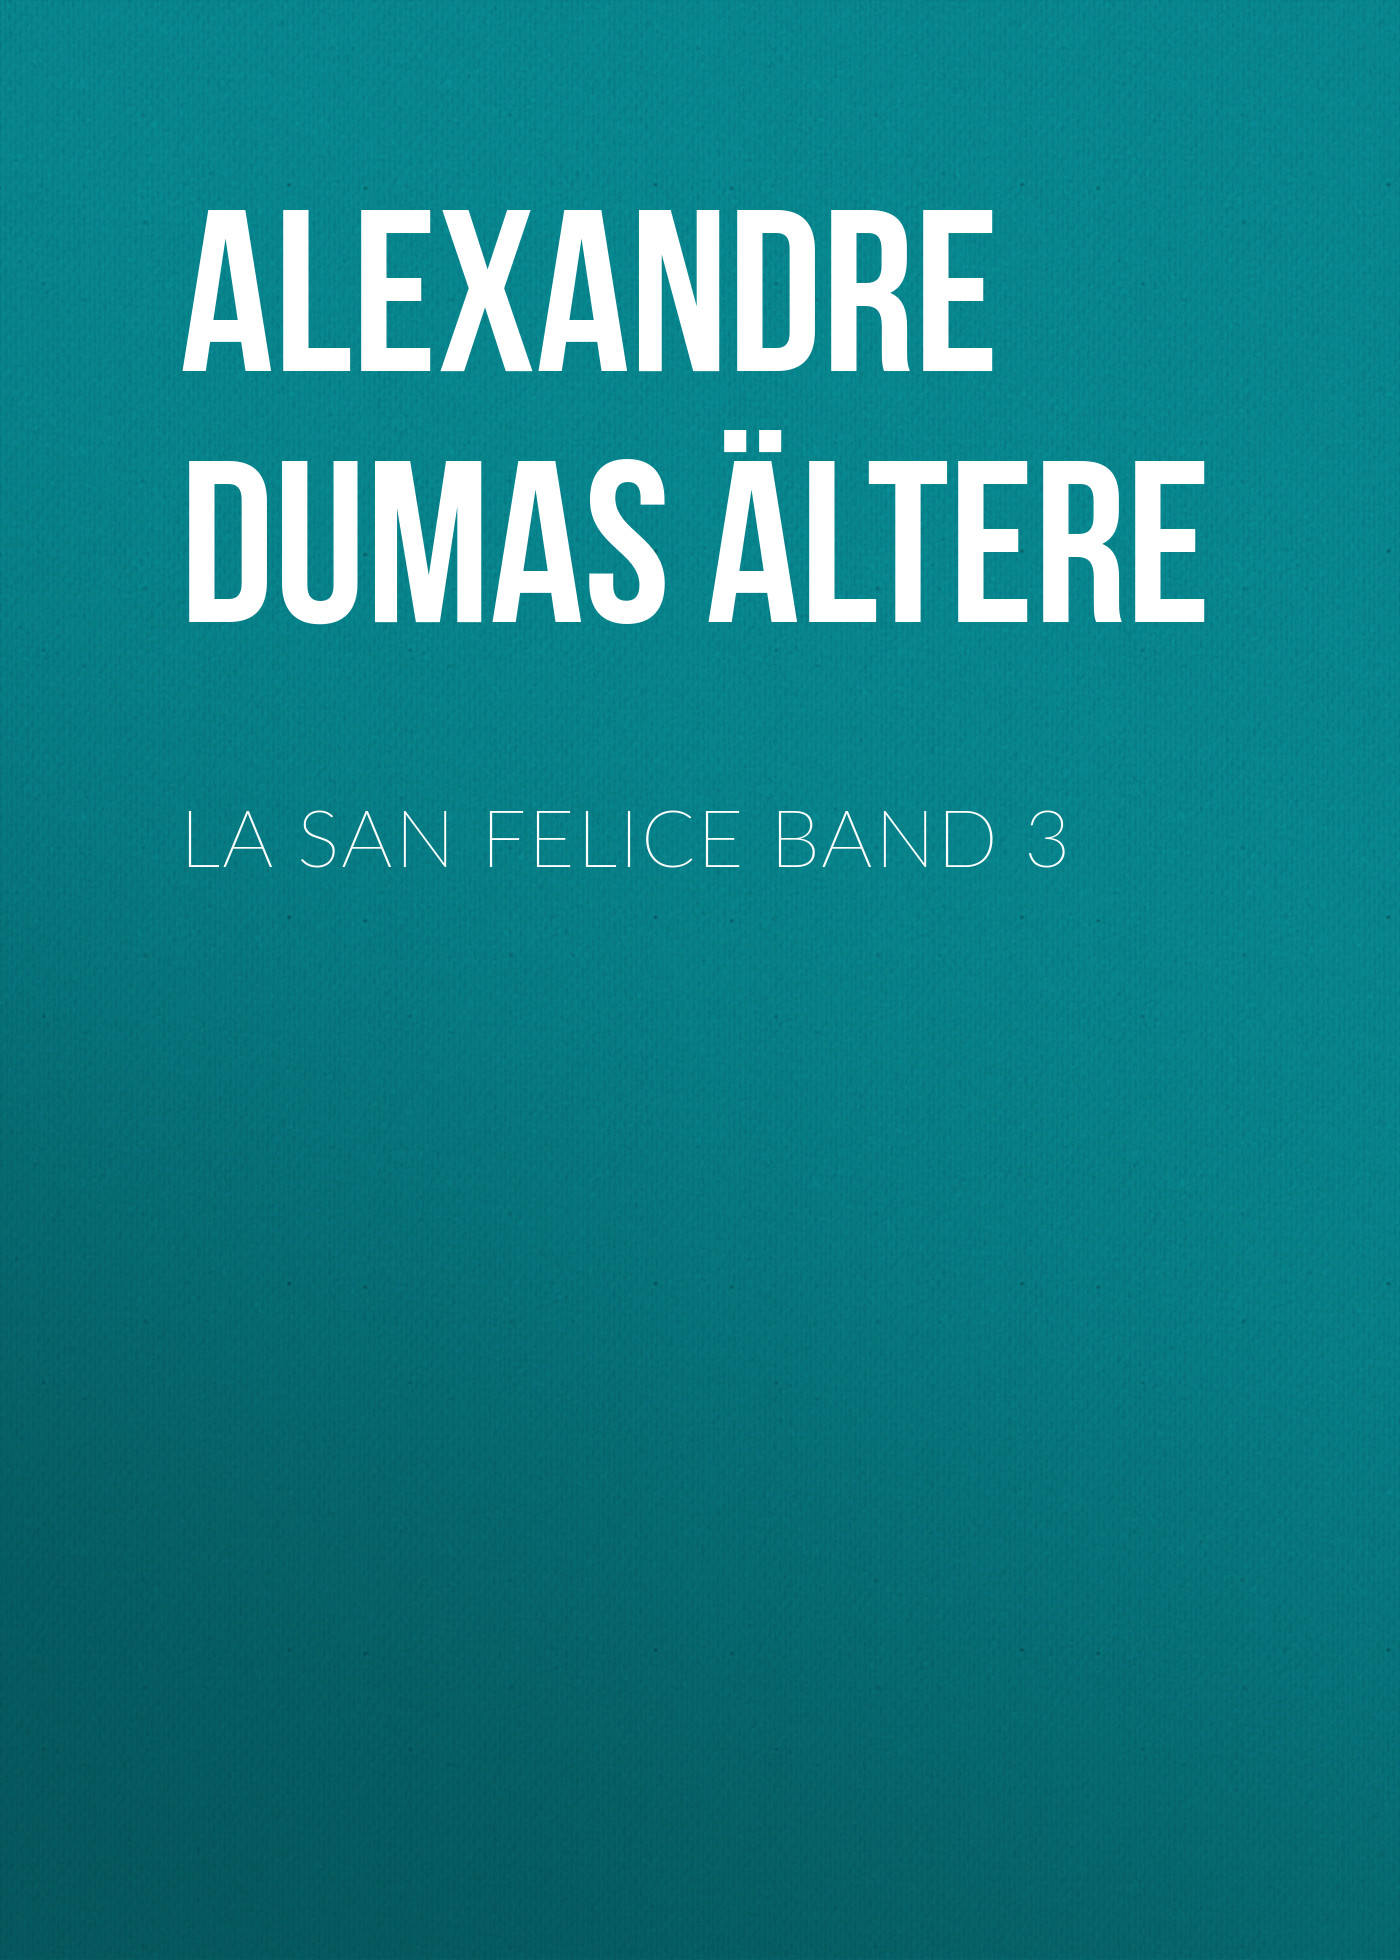 Книга La San Felice Band 3 из серии , созданная Alexandre Dumas der Ältere, может относится к жанру Зарубежная классика. Стоимость электронной книги La San Felice Band 3 с идентификатором 48632780 составляет 0 руб.